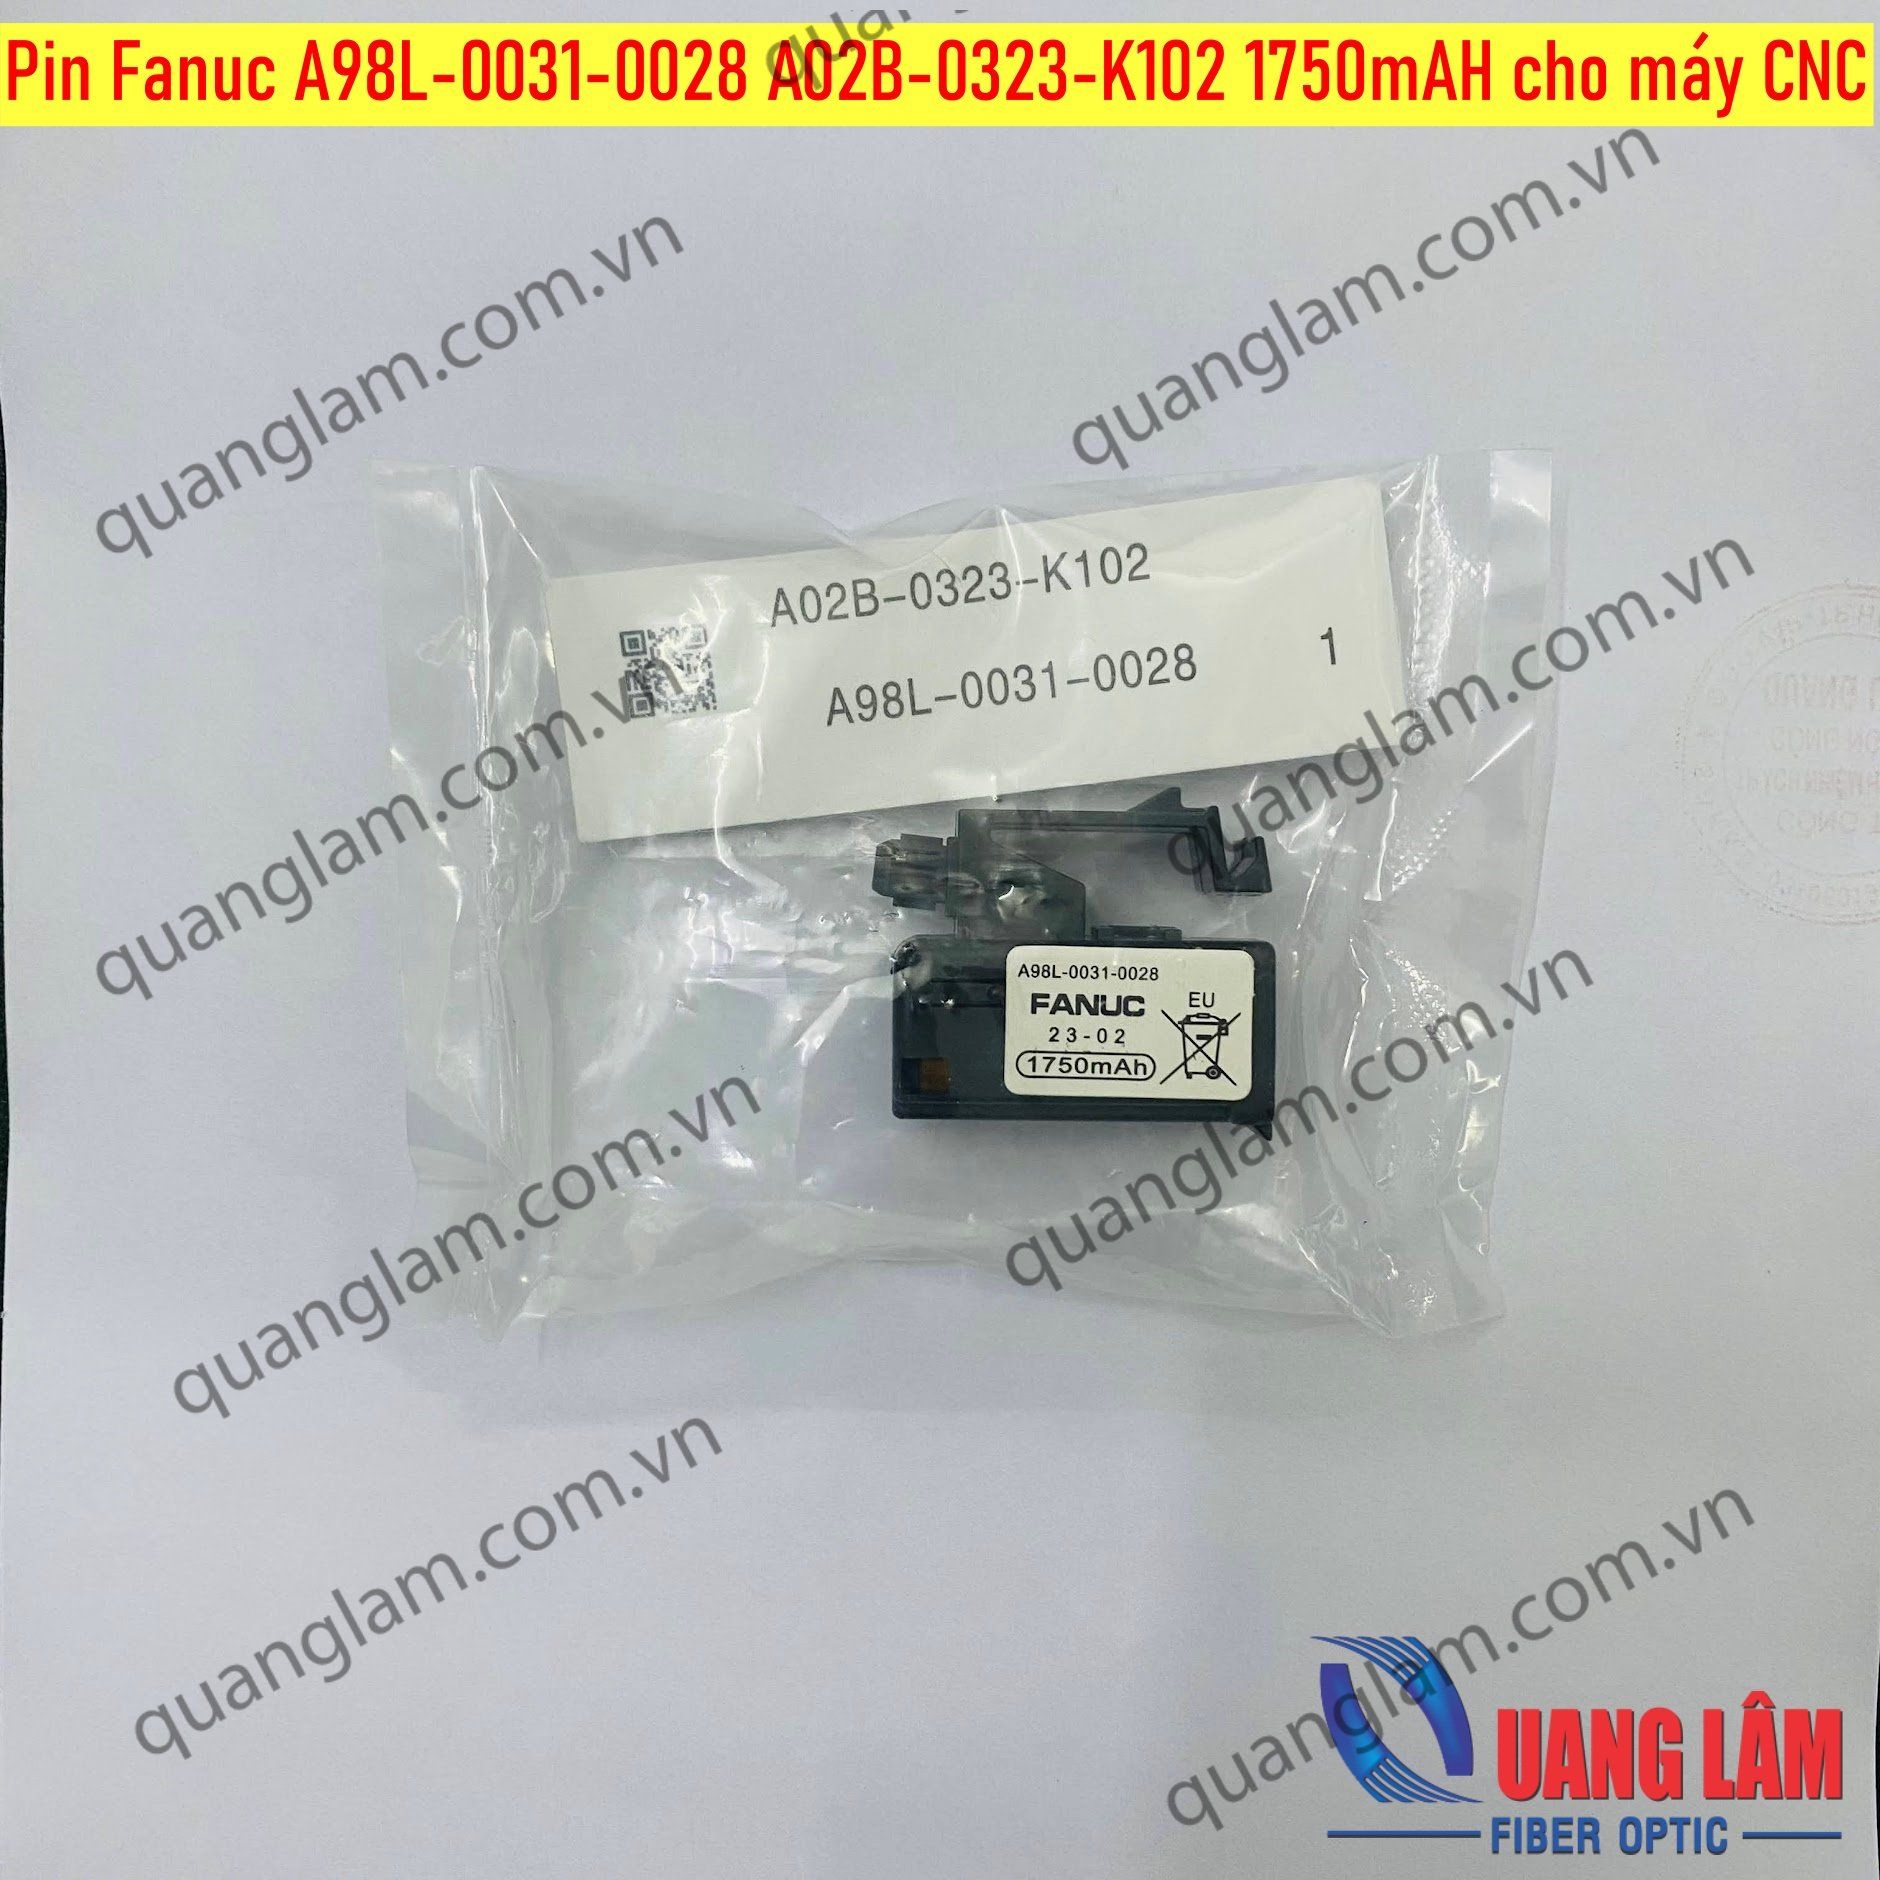 Pin Fanuc A98L-0031-0028 A02B-0323-K102 1750mAH cho máy CNC (Loại 4 chân gài)